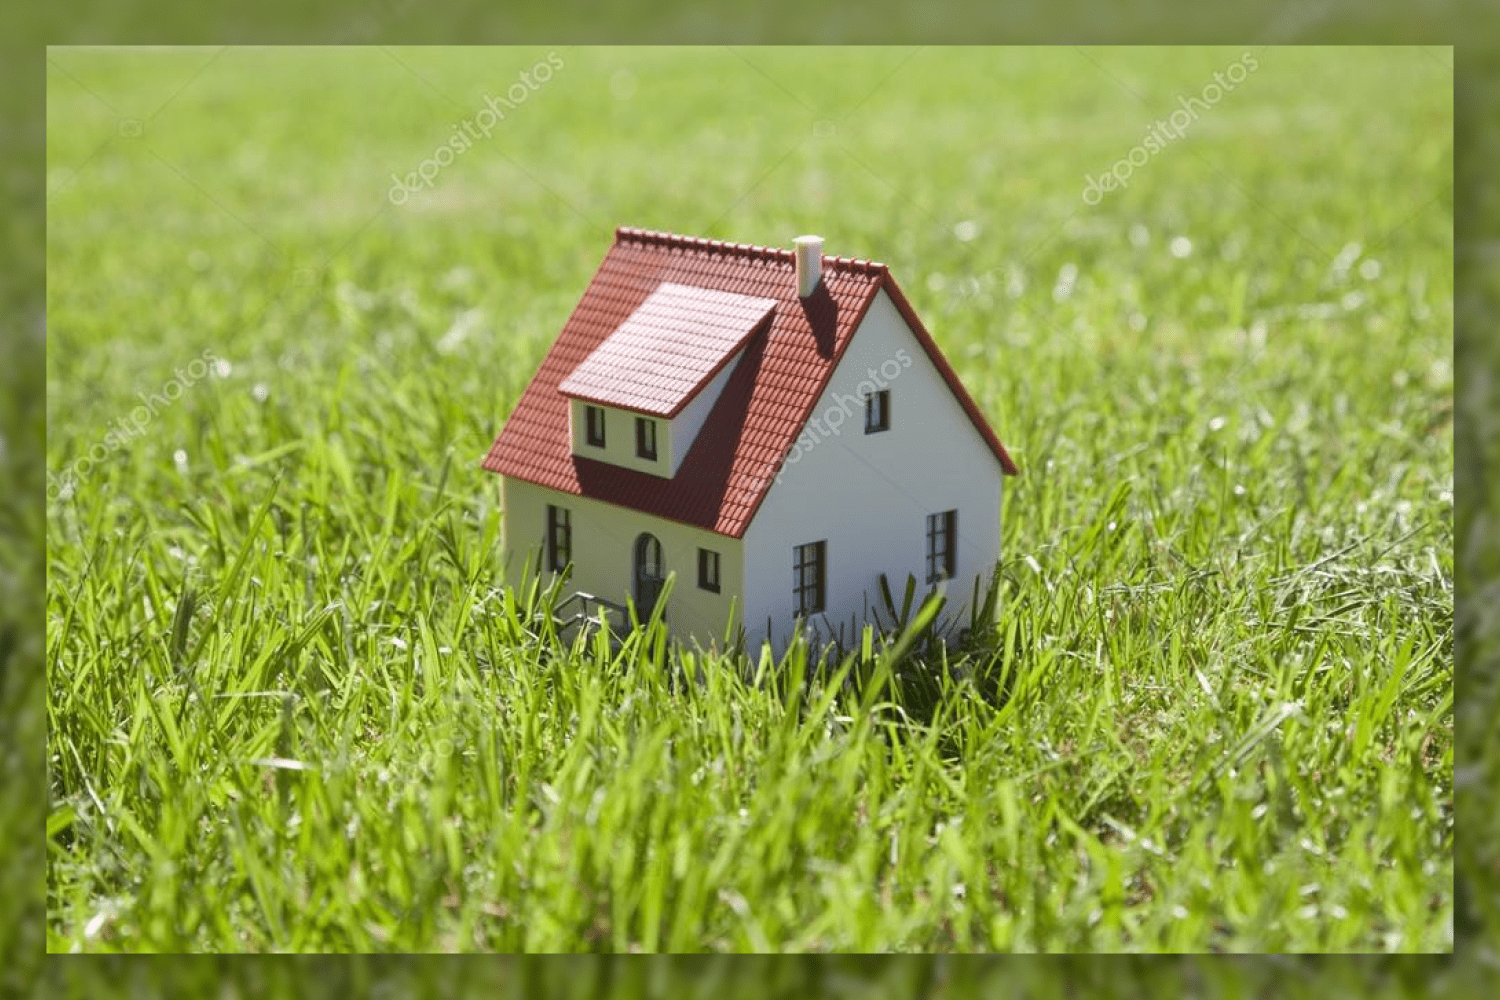 1 little house on green grass 99